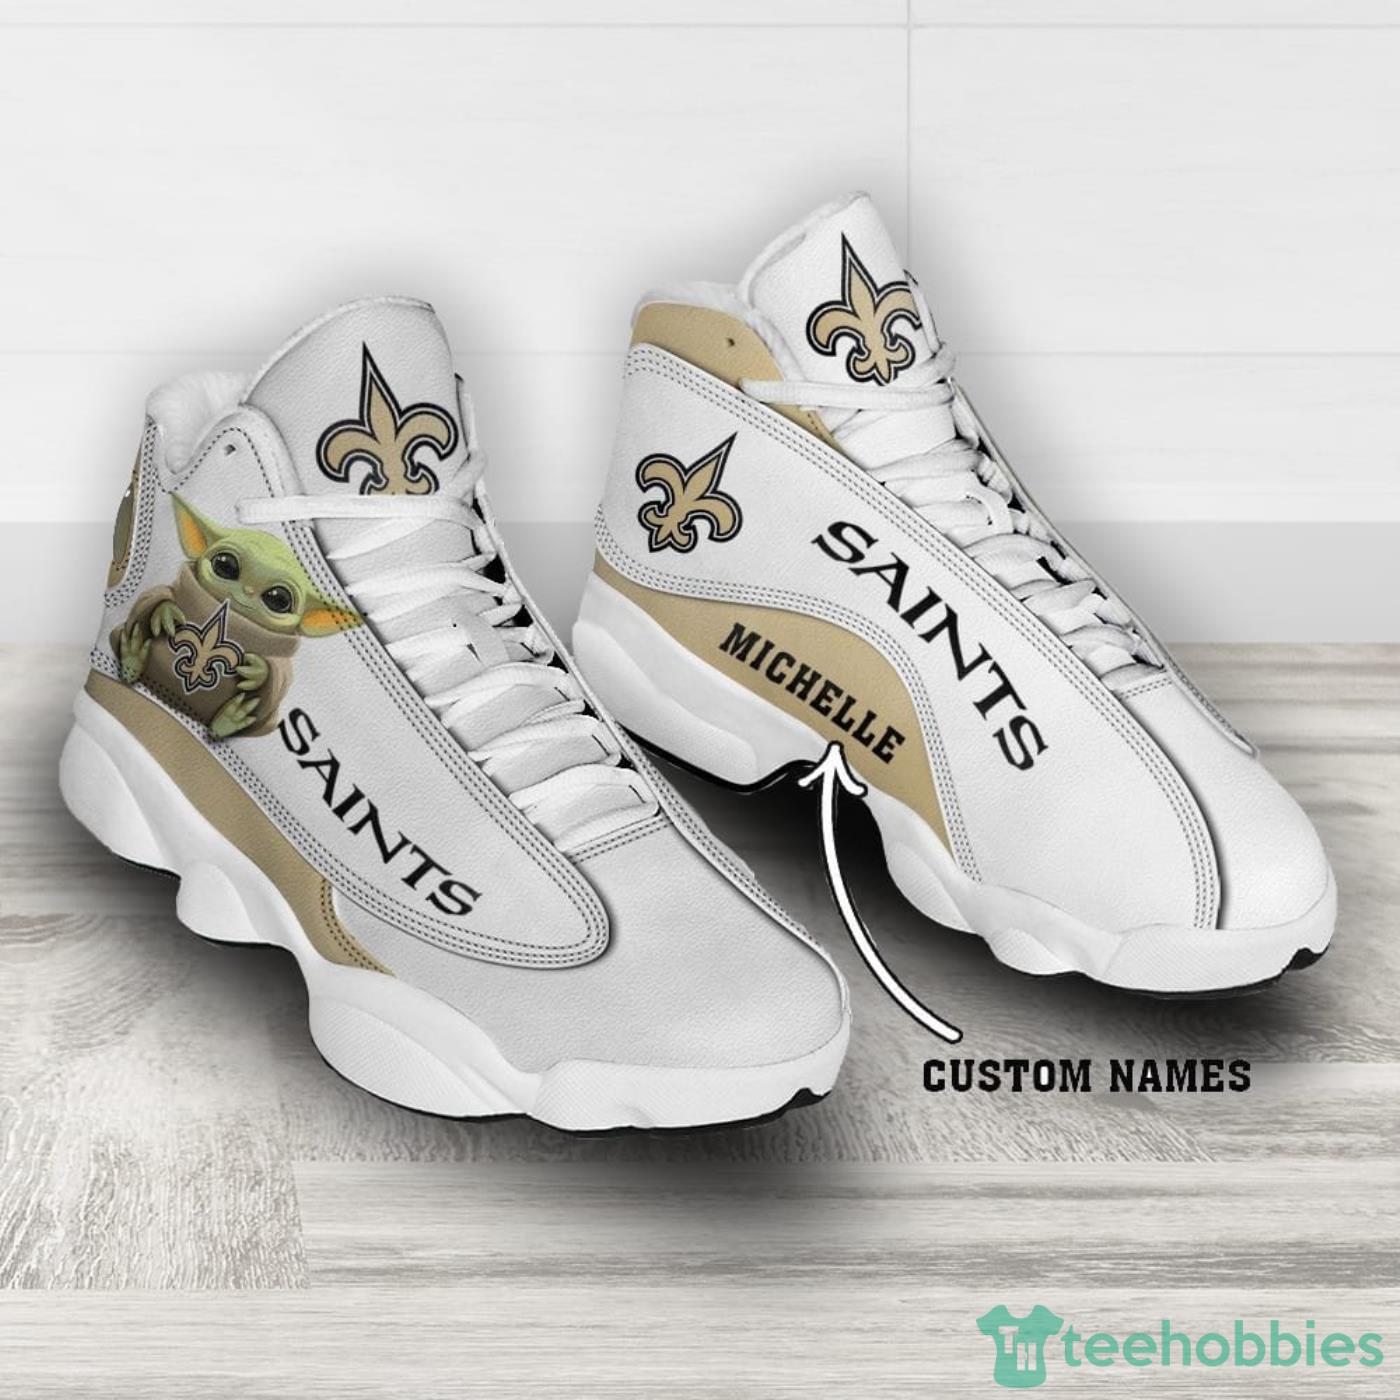 New Orleans Saints NFL Personalized Air Jordan 13 Sport Shoes